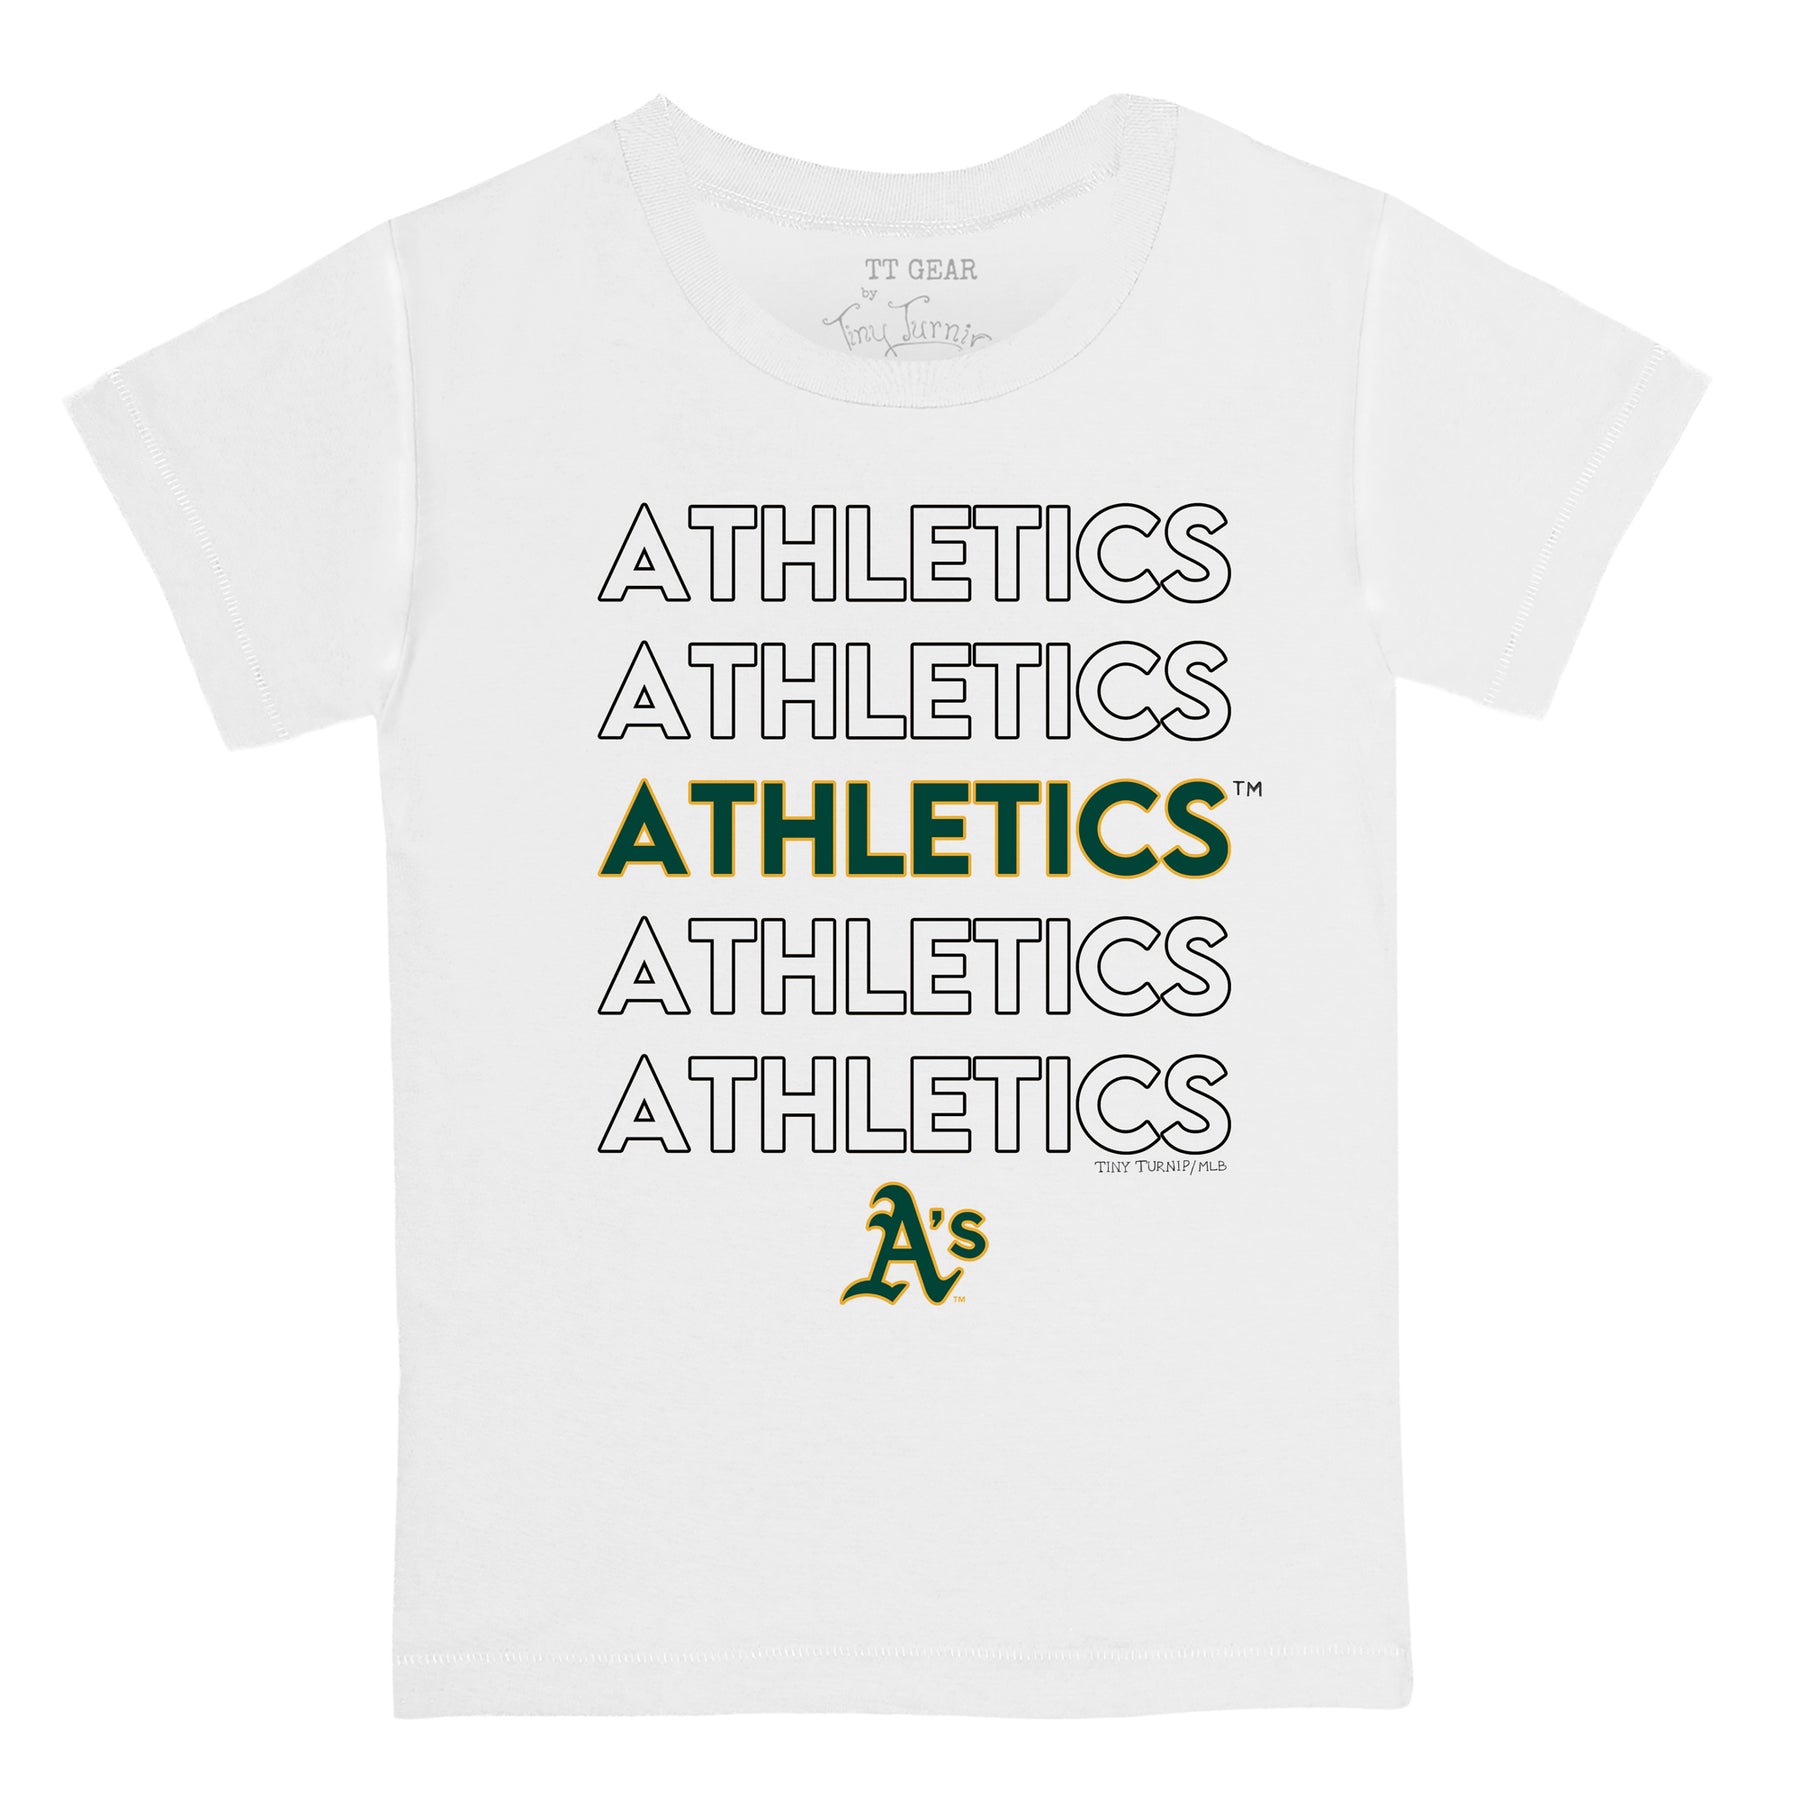 Youth Oakland Athletics White Base Is Mine V-Neck T-Shirt